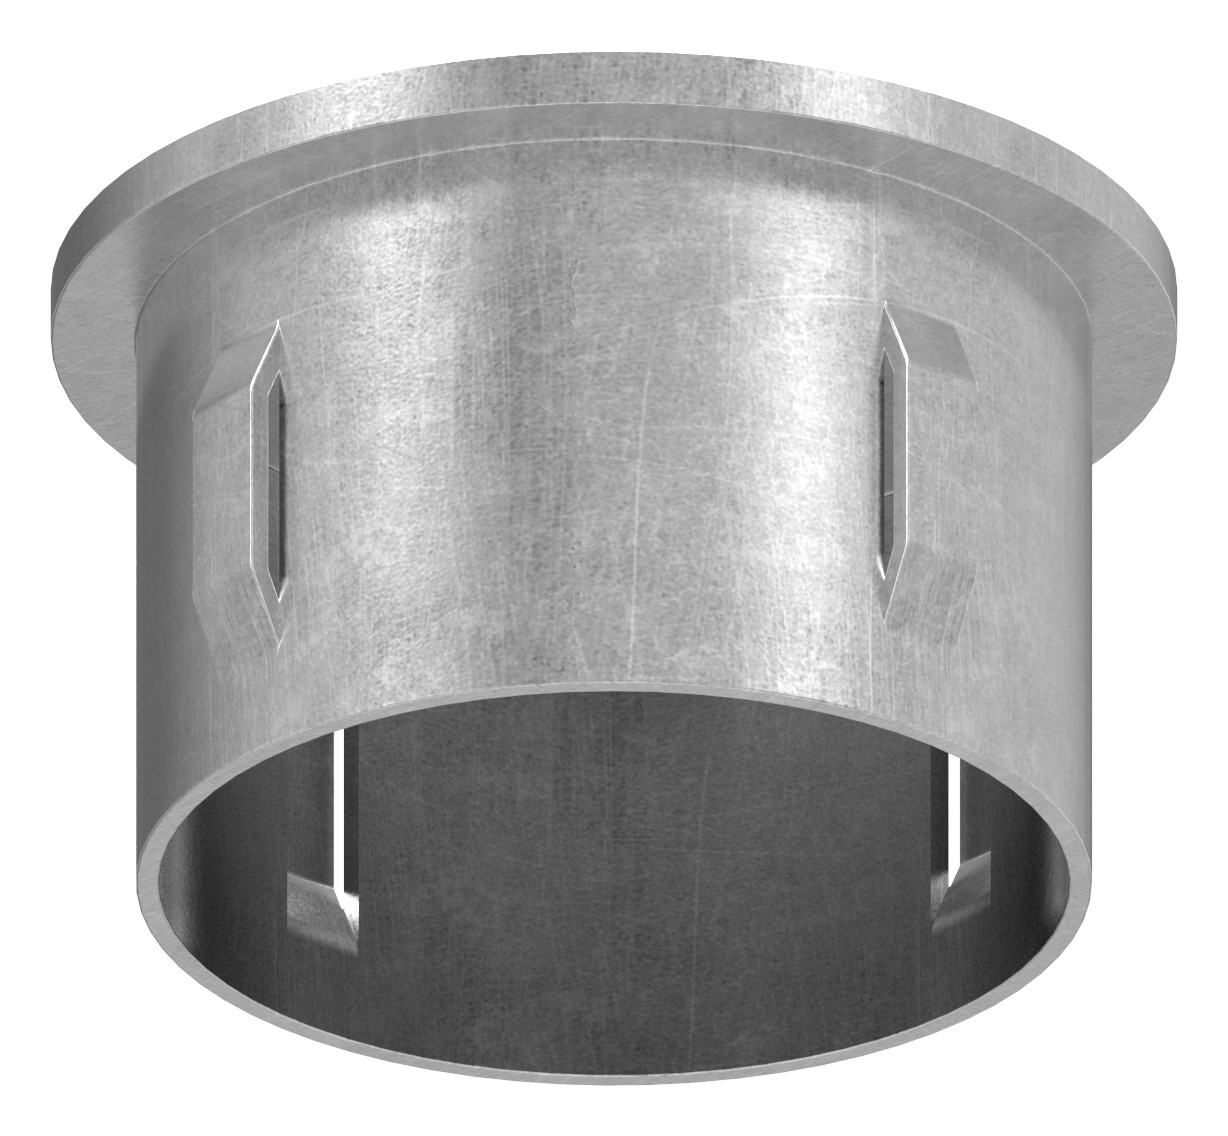 Stahleinschlagkappe, für Rohr 48,3mm